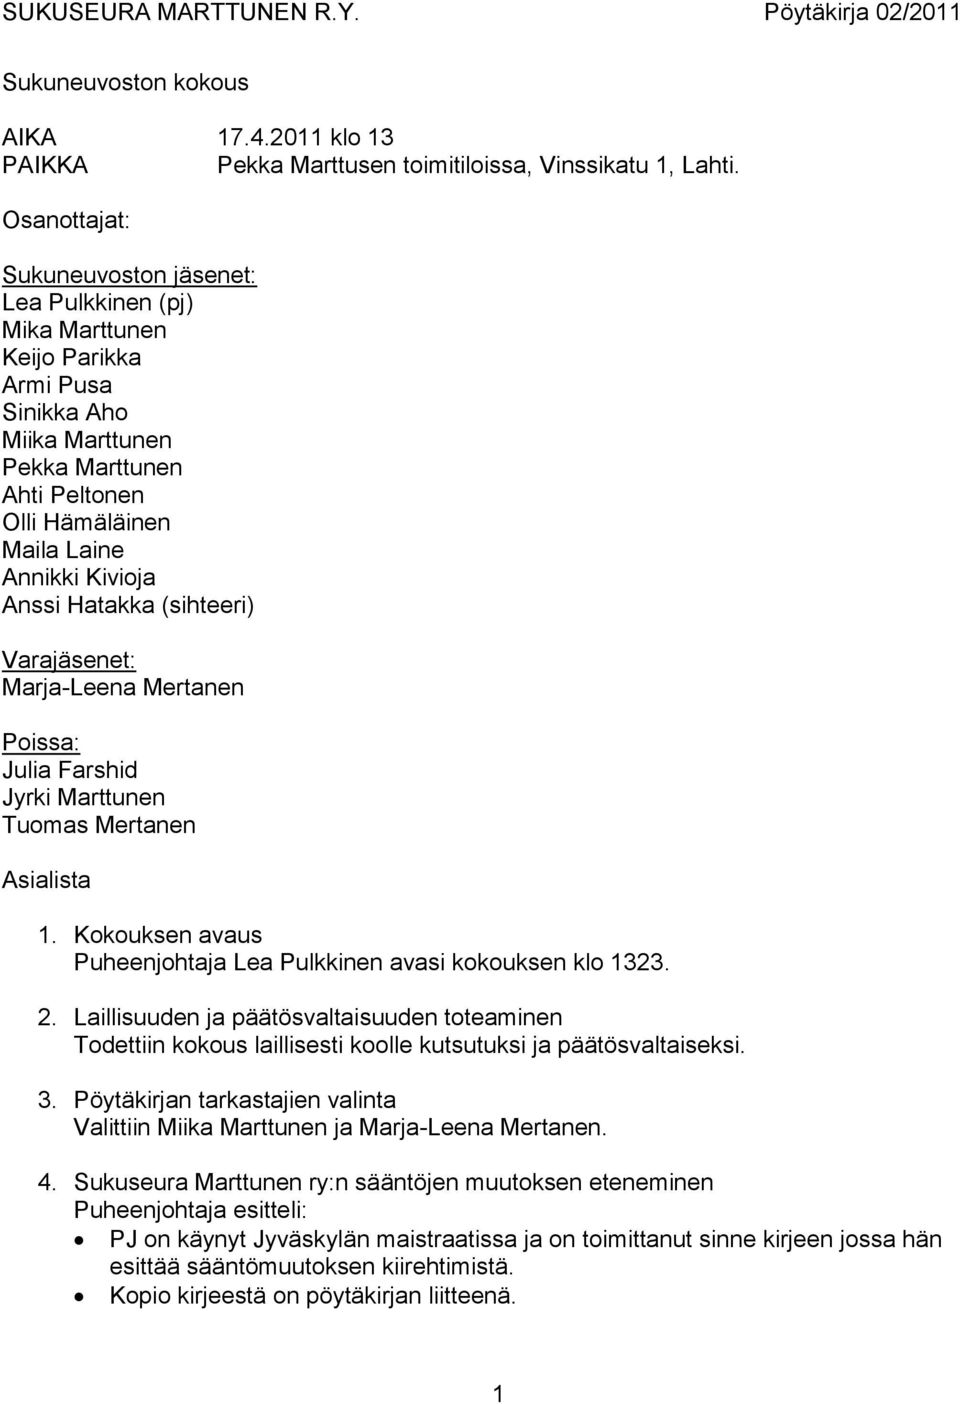 Anssi Hatakka (sihteeri) Varajäsenet: Marja-Leena Mertanen Poissa: Julia Farshid Jyrki Marttunen Tuomas Mertanen Asialista 1. Kokouksen avaus Puheenjohtaja Lea Pulkkinen avasi kokouksen klo 1323. 2.